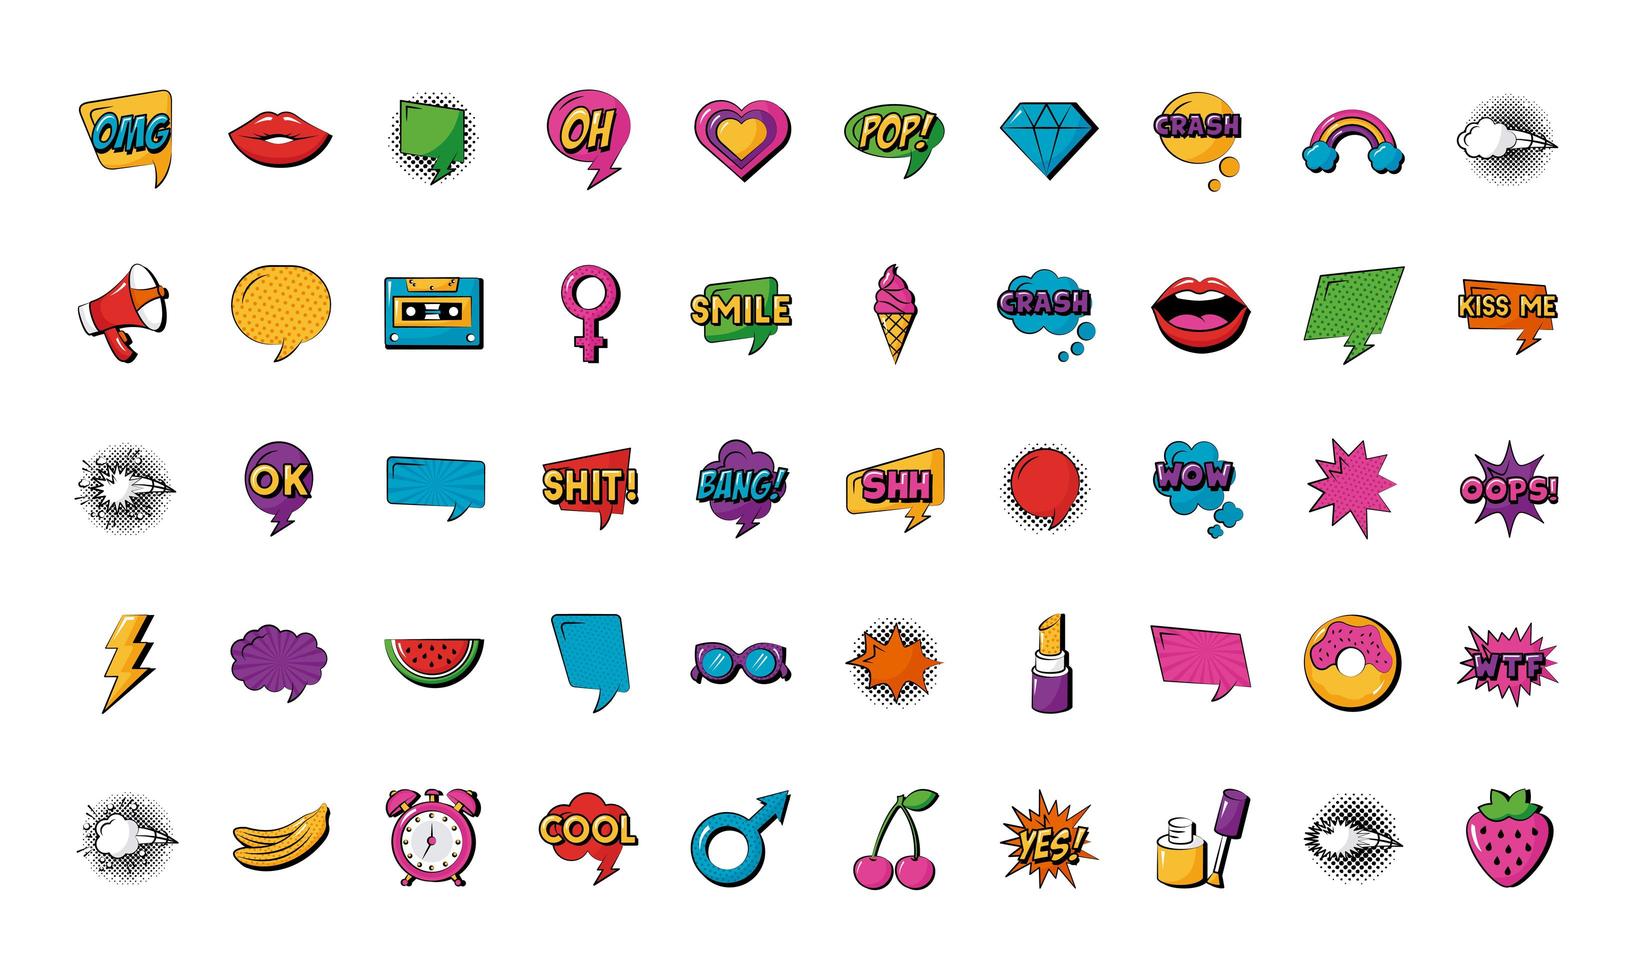 pacchetto di cinquanta icone di set di pop art vettore